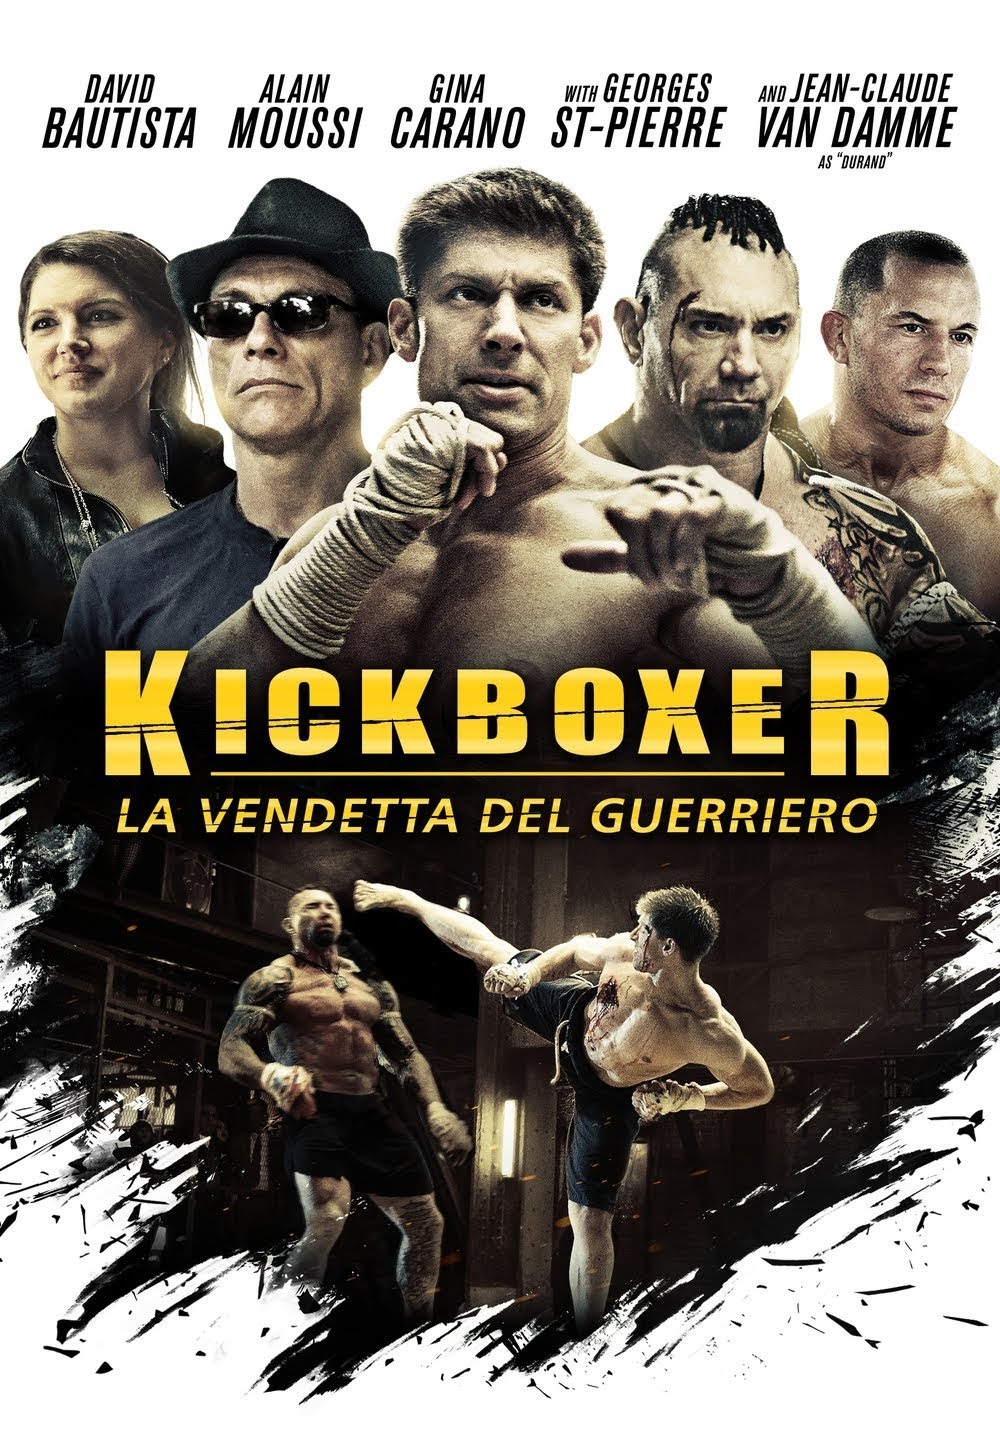 Kickboxer – La vendetta del guerriero [HD] (2016)